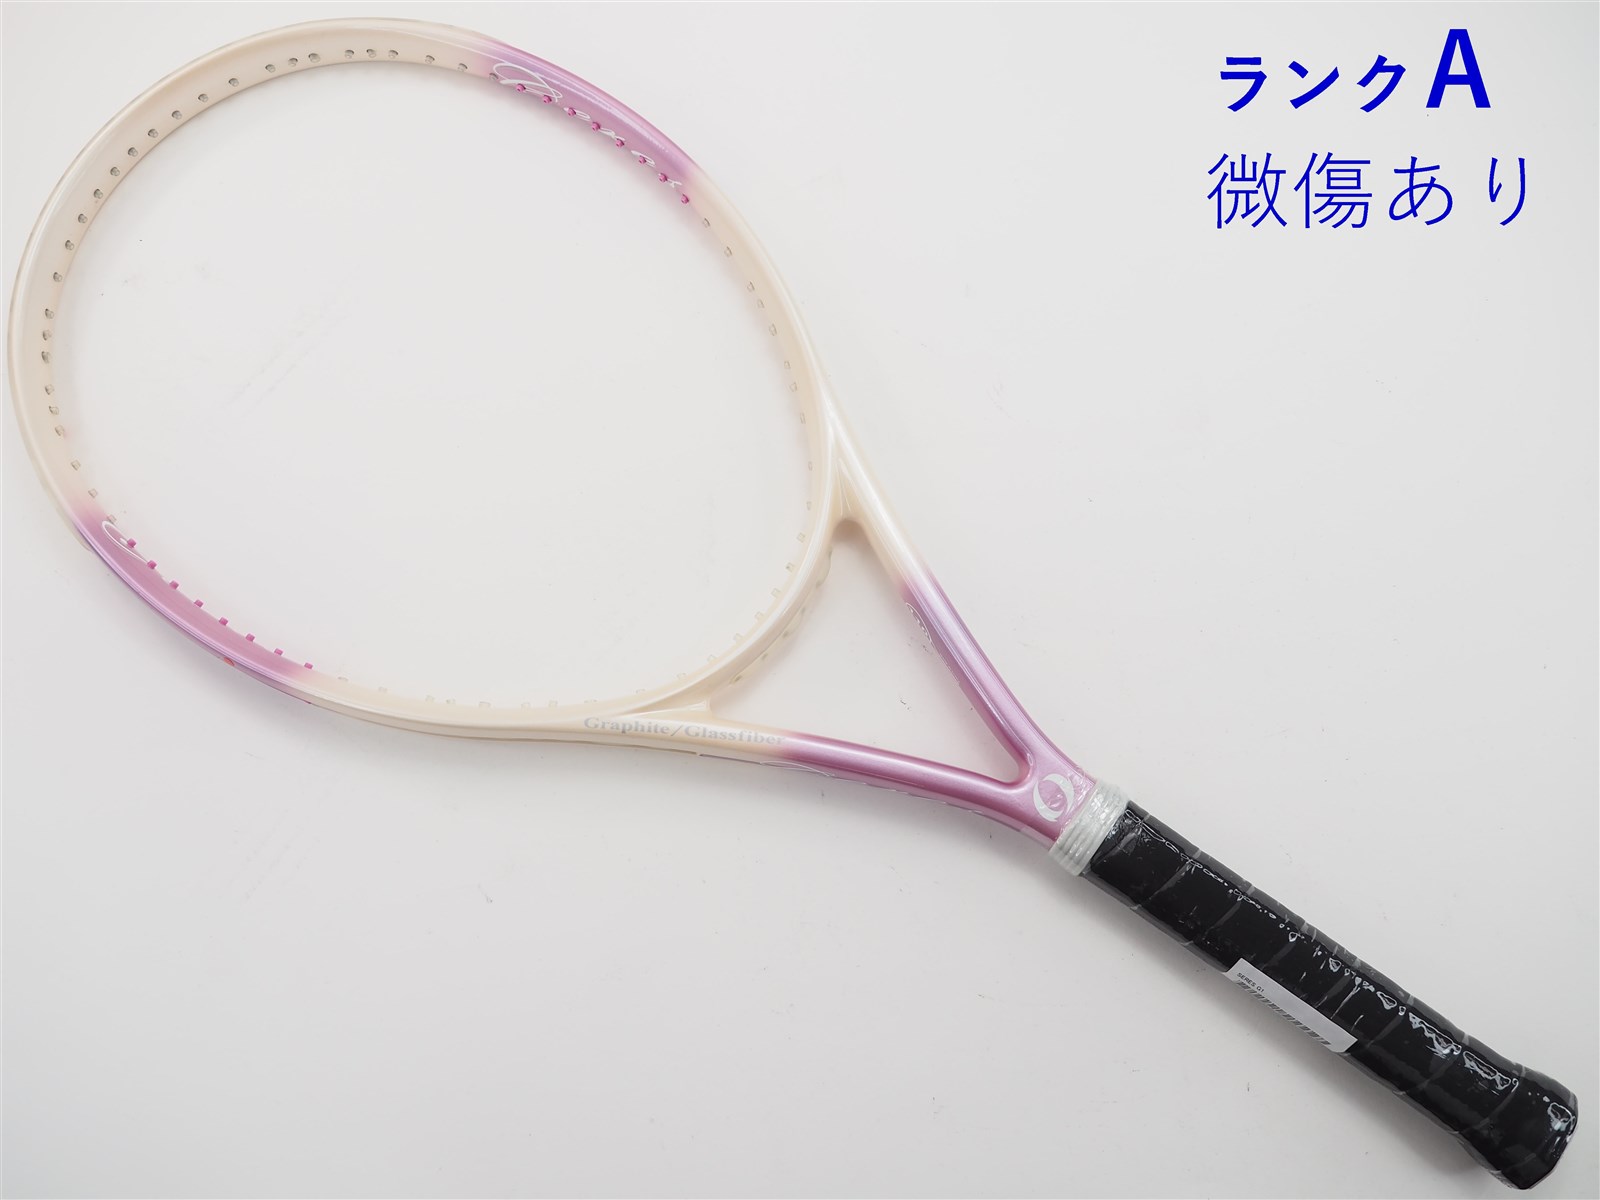 テニスラケット イグニオ セレス (G1相当)IGNIO SERES www